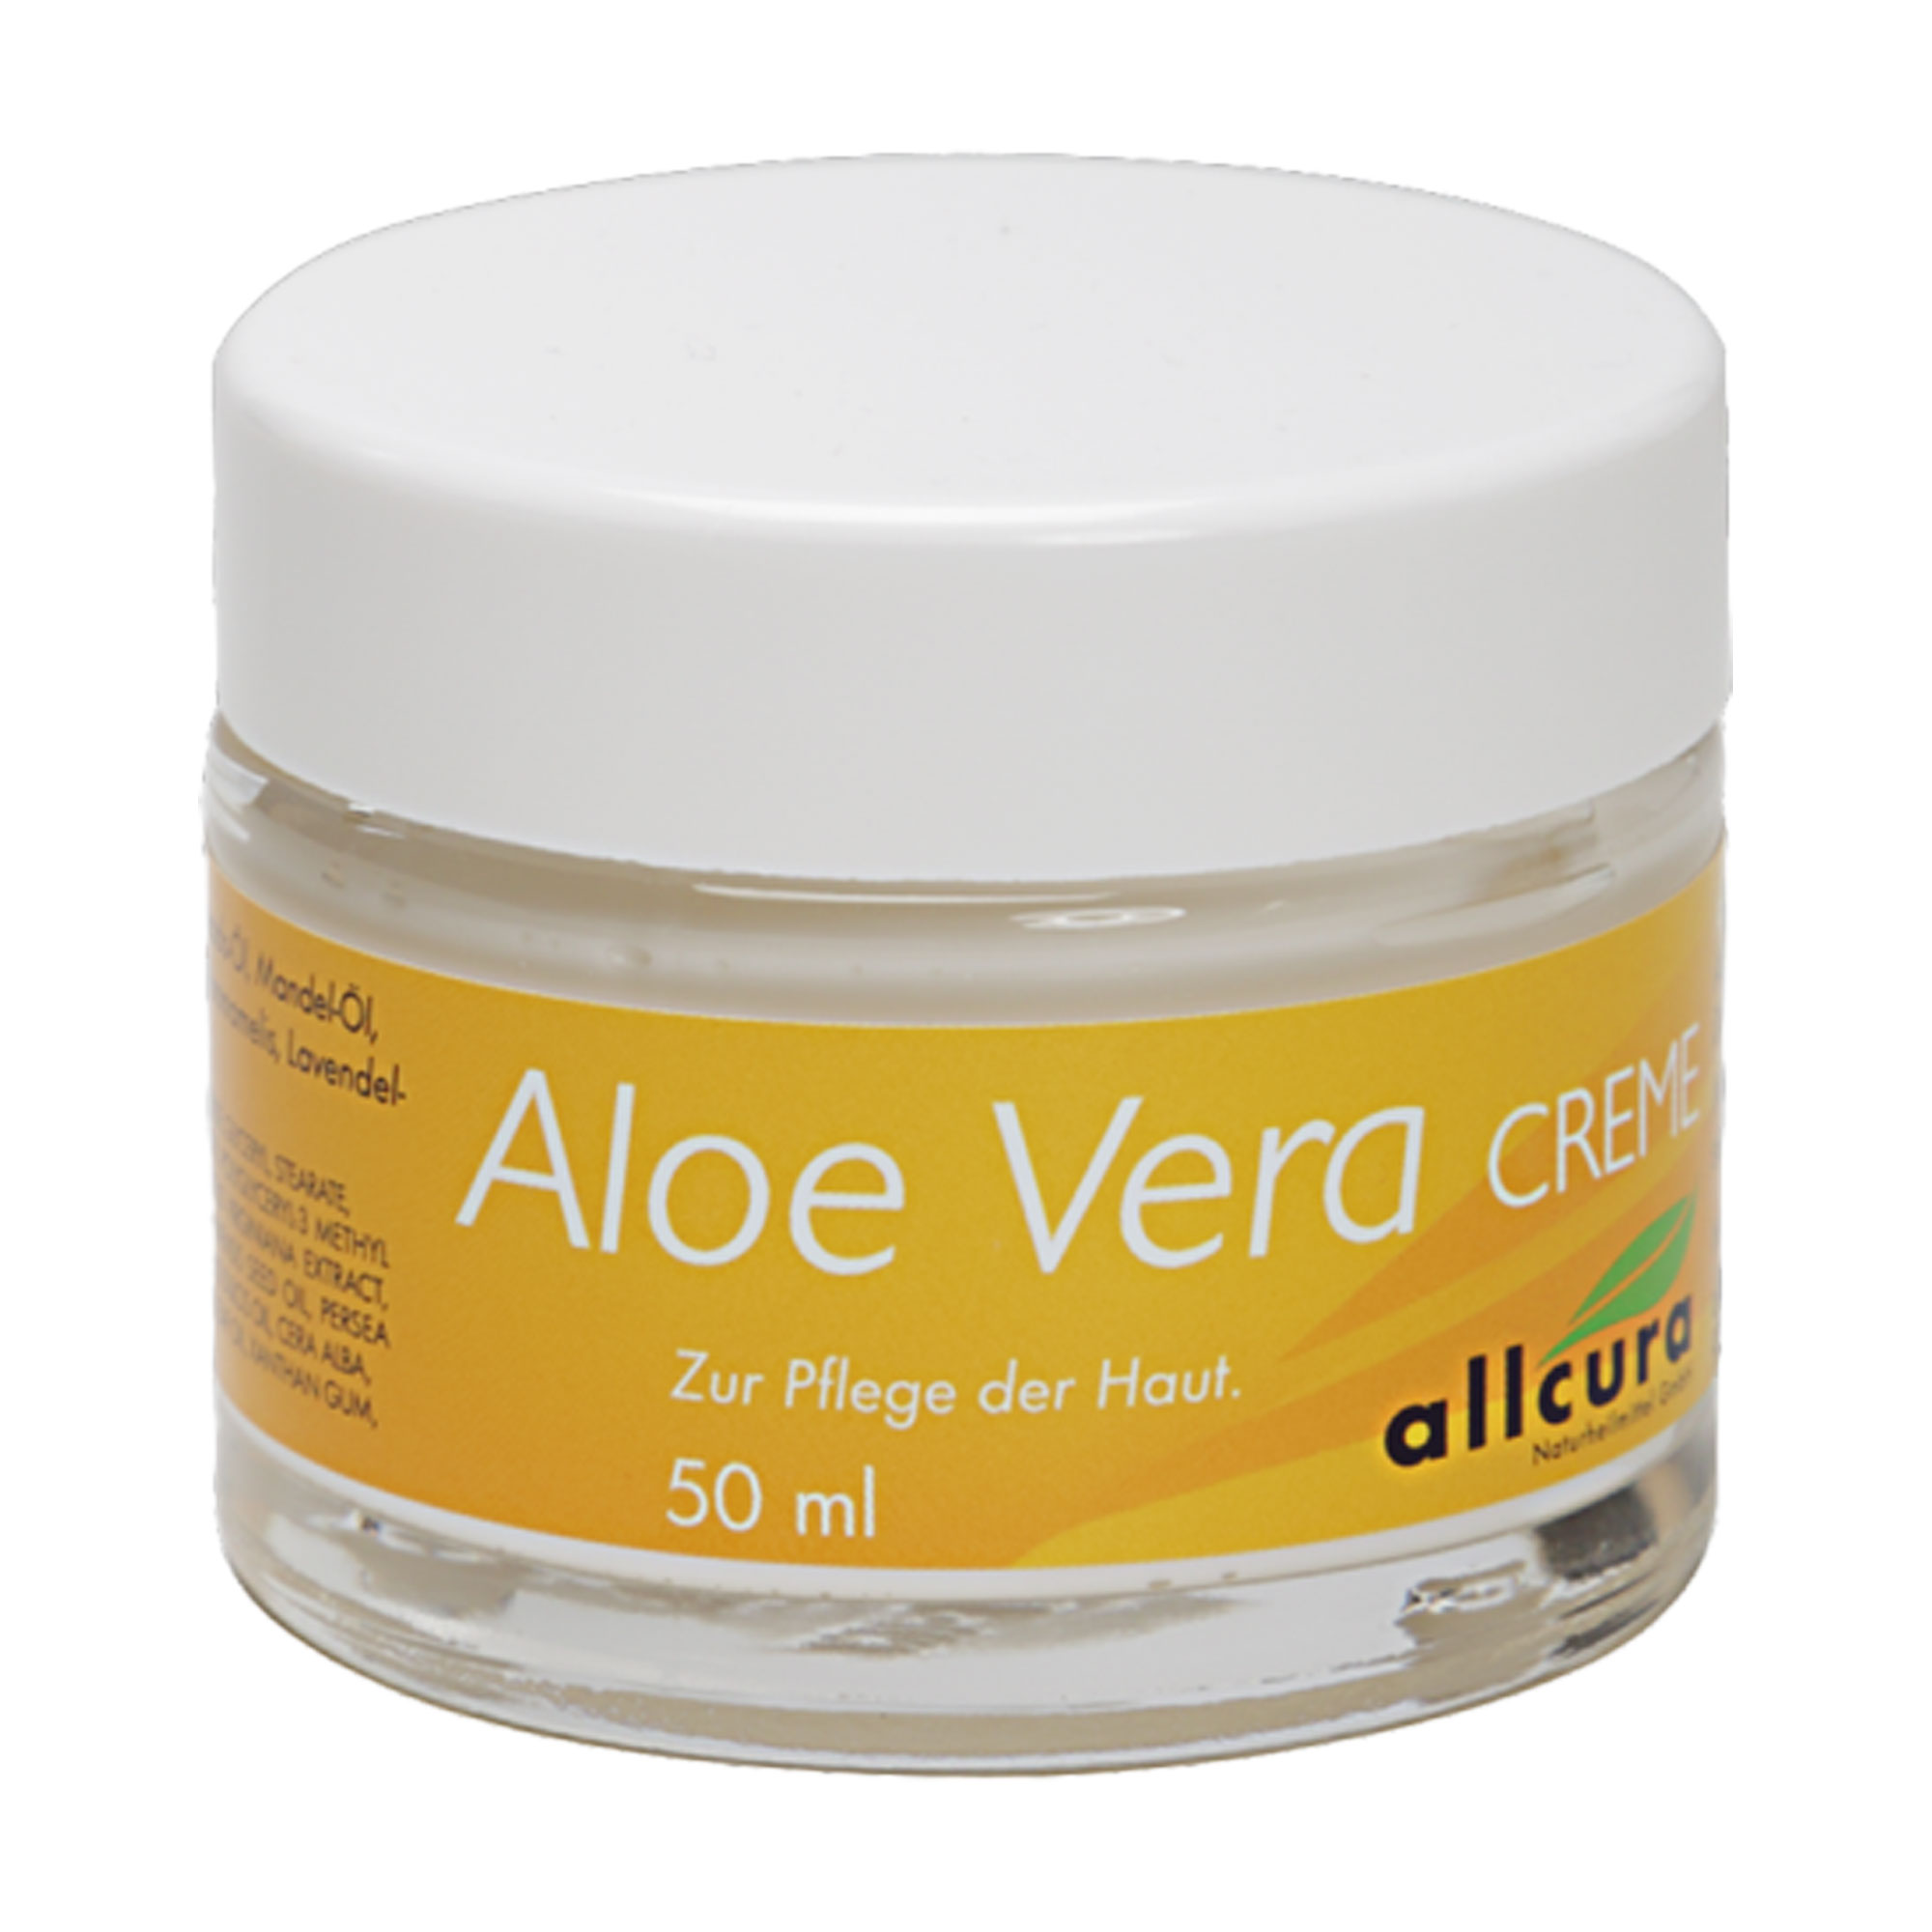 Sanfte Hautpflege mit Aloe Vera.